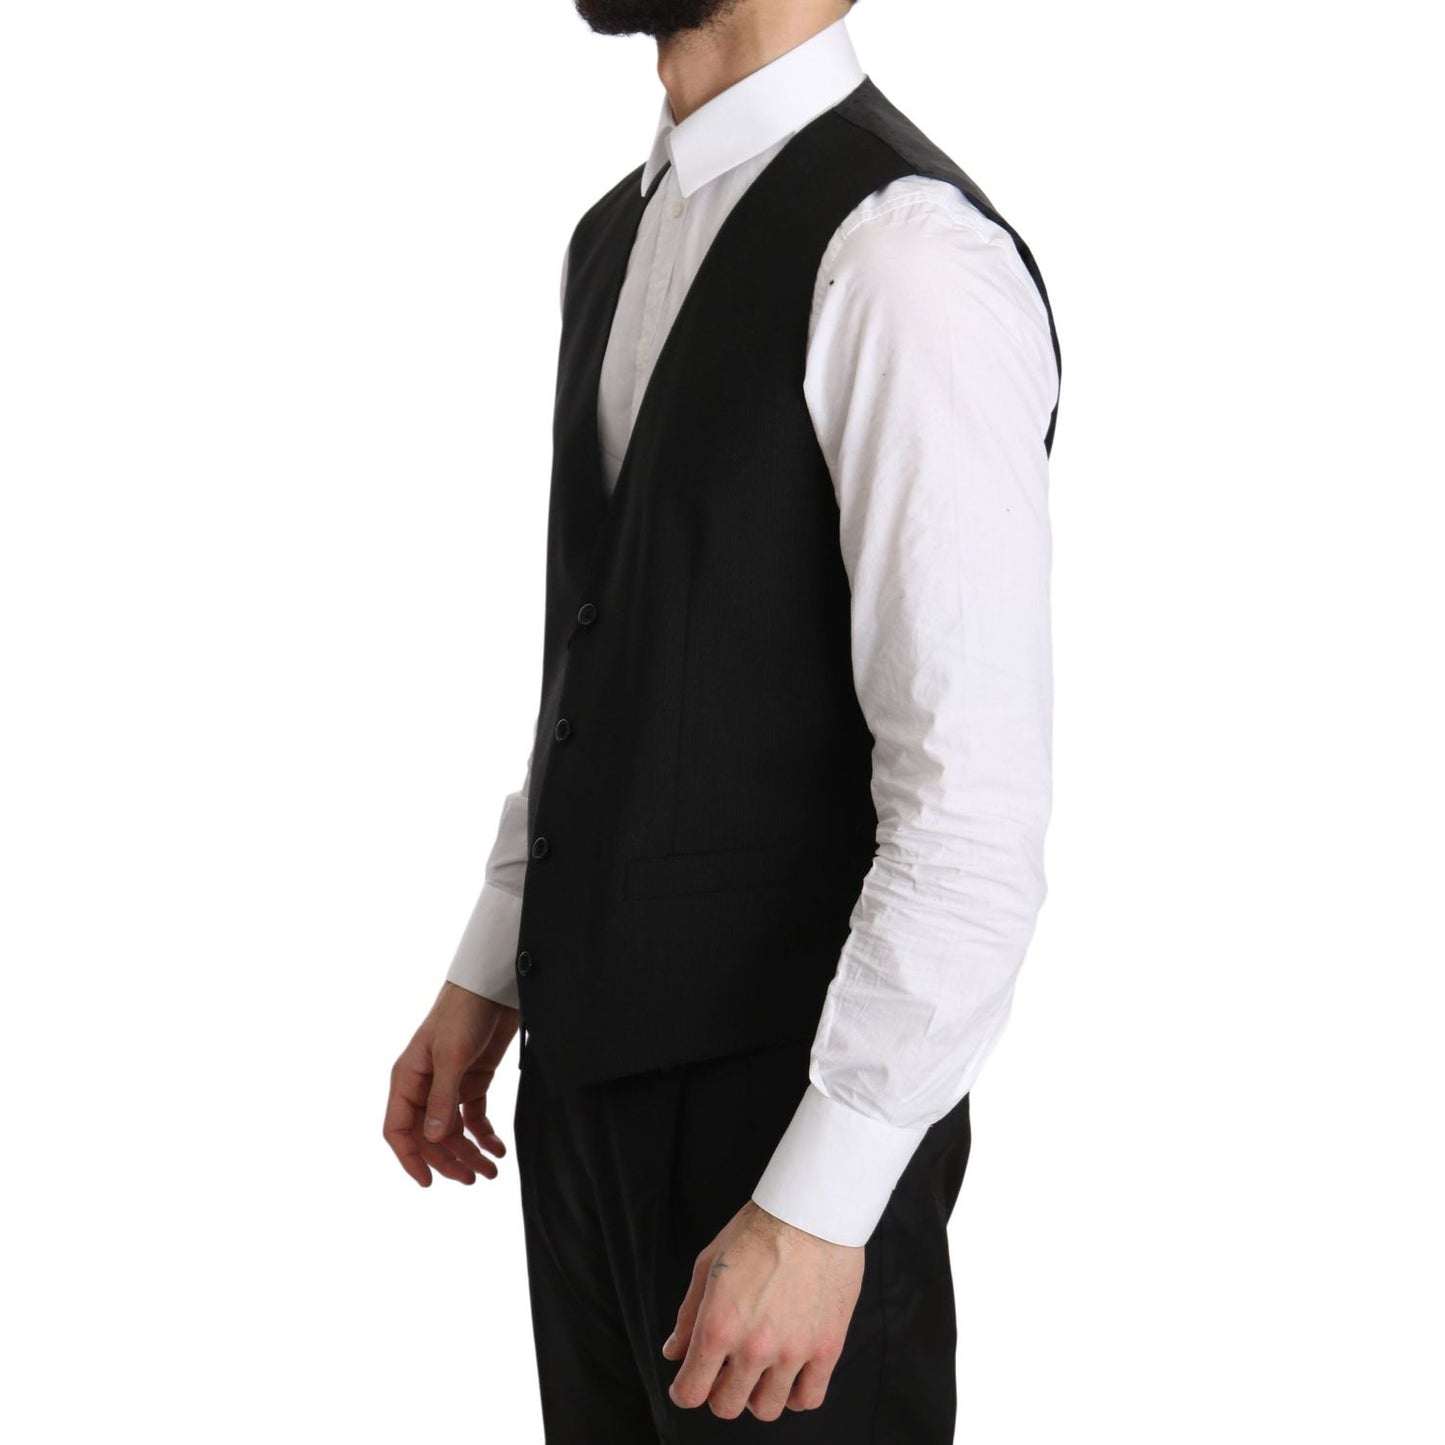 Dolce & Gabbana Elegant Gray Formal Vest - Regular Fit gray-gilet-staff-regular-fit-formal-vest IMG_1779-scaled.jpg